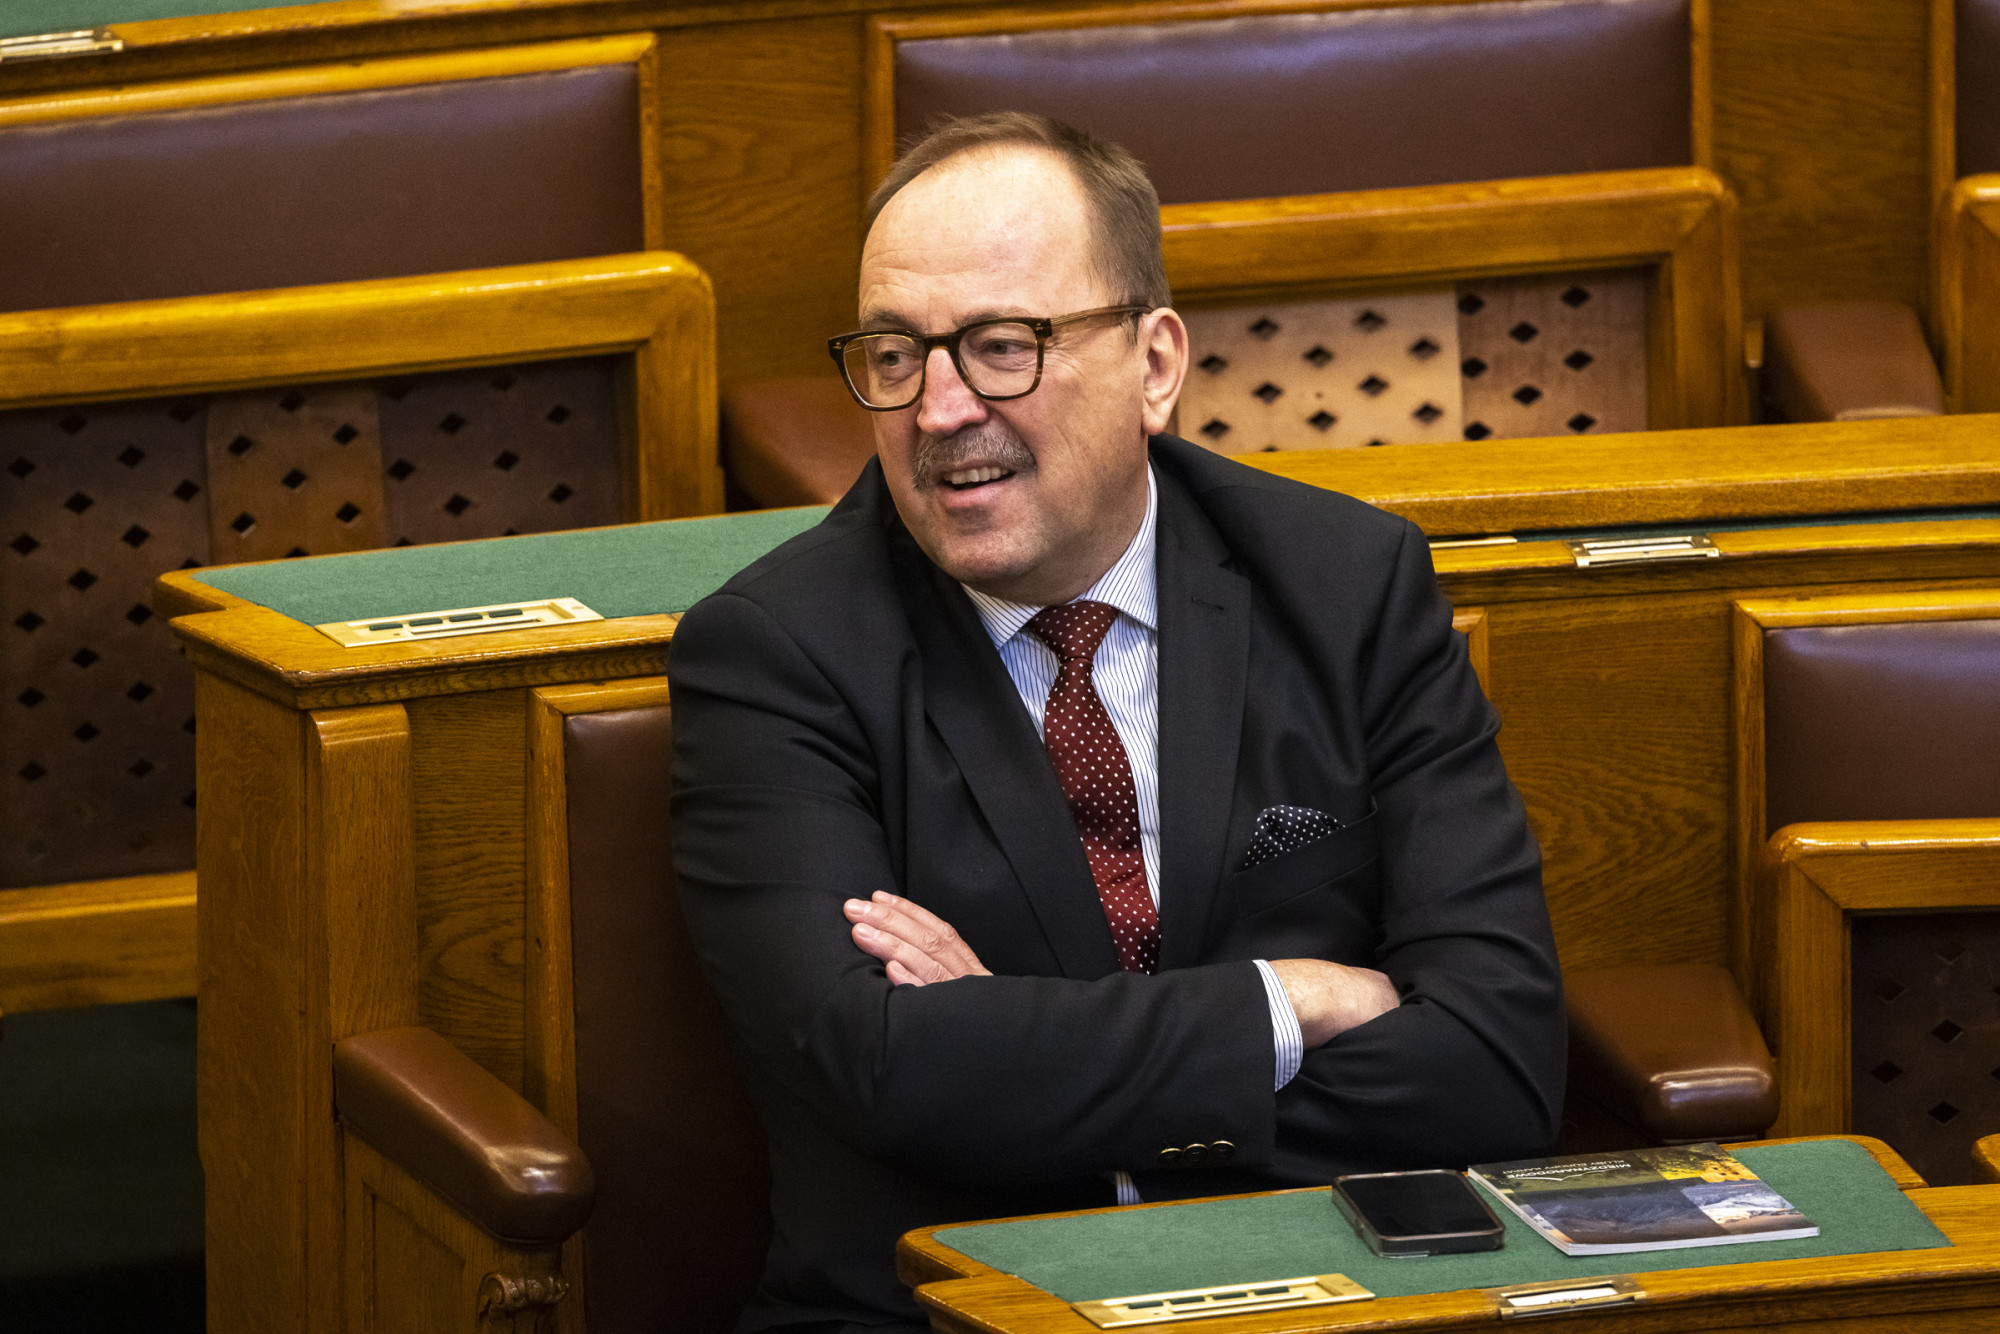 Németh Zsolt szerint "nagy örömmel fogadja" a finn parlament a Fidesz delegációját